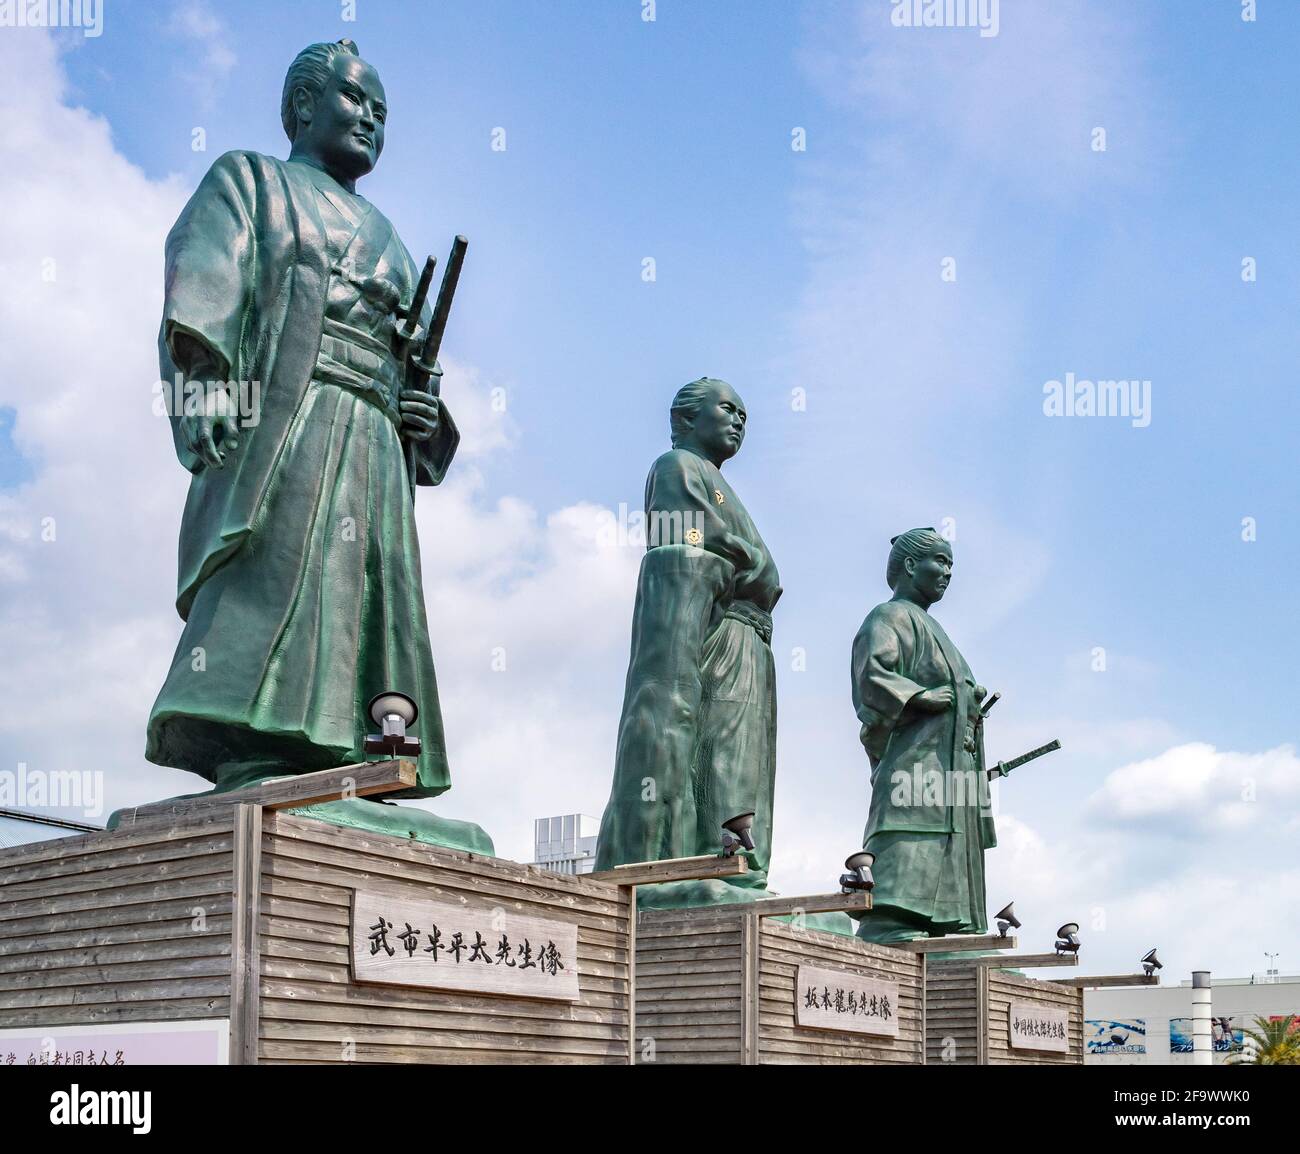 29 marzo 2019: Città di Kochi, Giappone - statue di tre samurai che erano prominenti nella Restaurazione Meiji, Sakamoto Ryoma, Takechi Hanpeita e Nakaoka Foto Stock